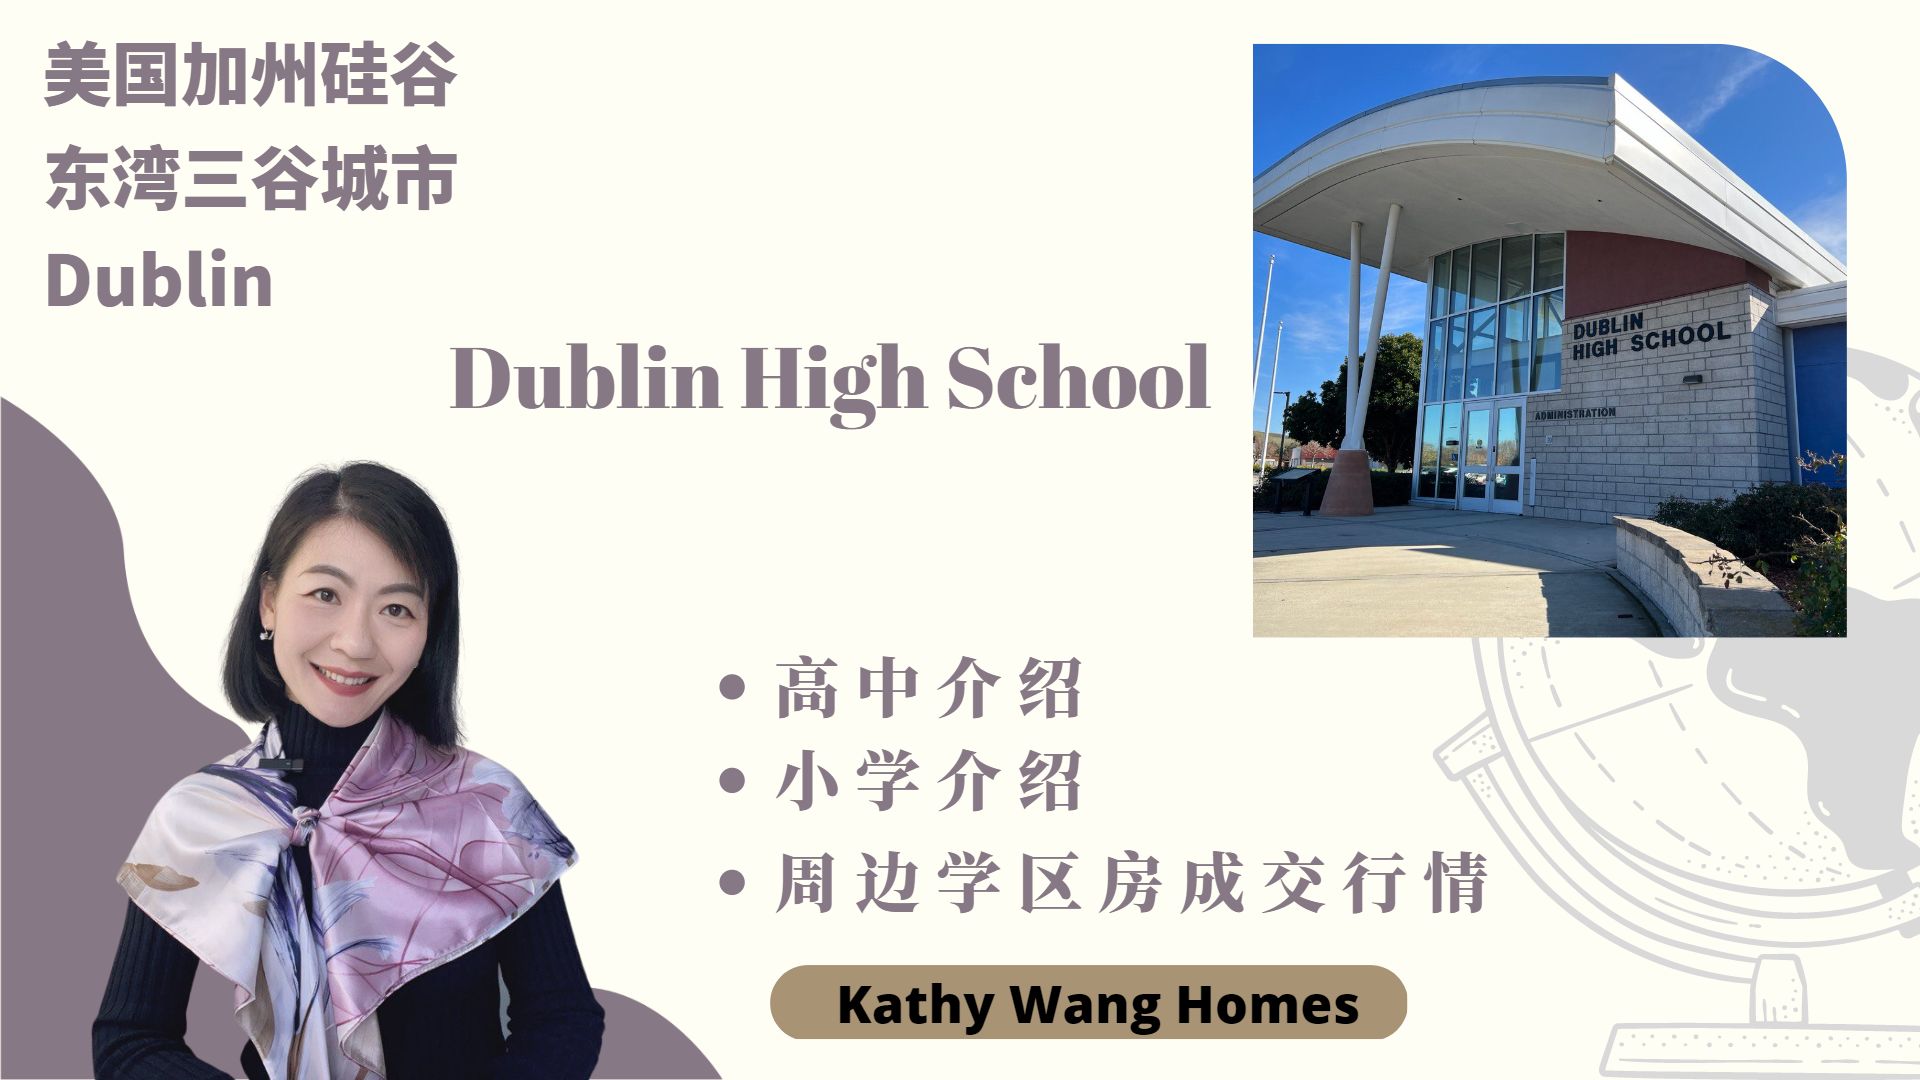 东湾城市Dublin介绍——Dublin高中、周边中小学和社区、学区房